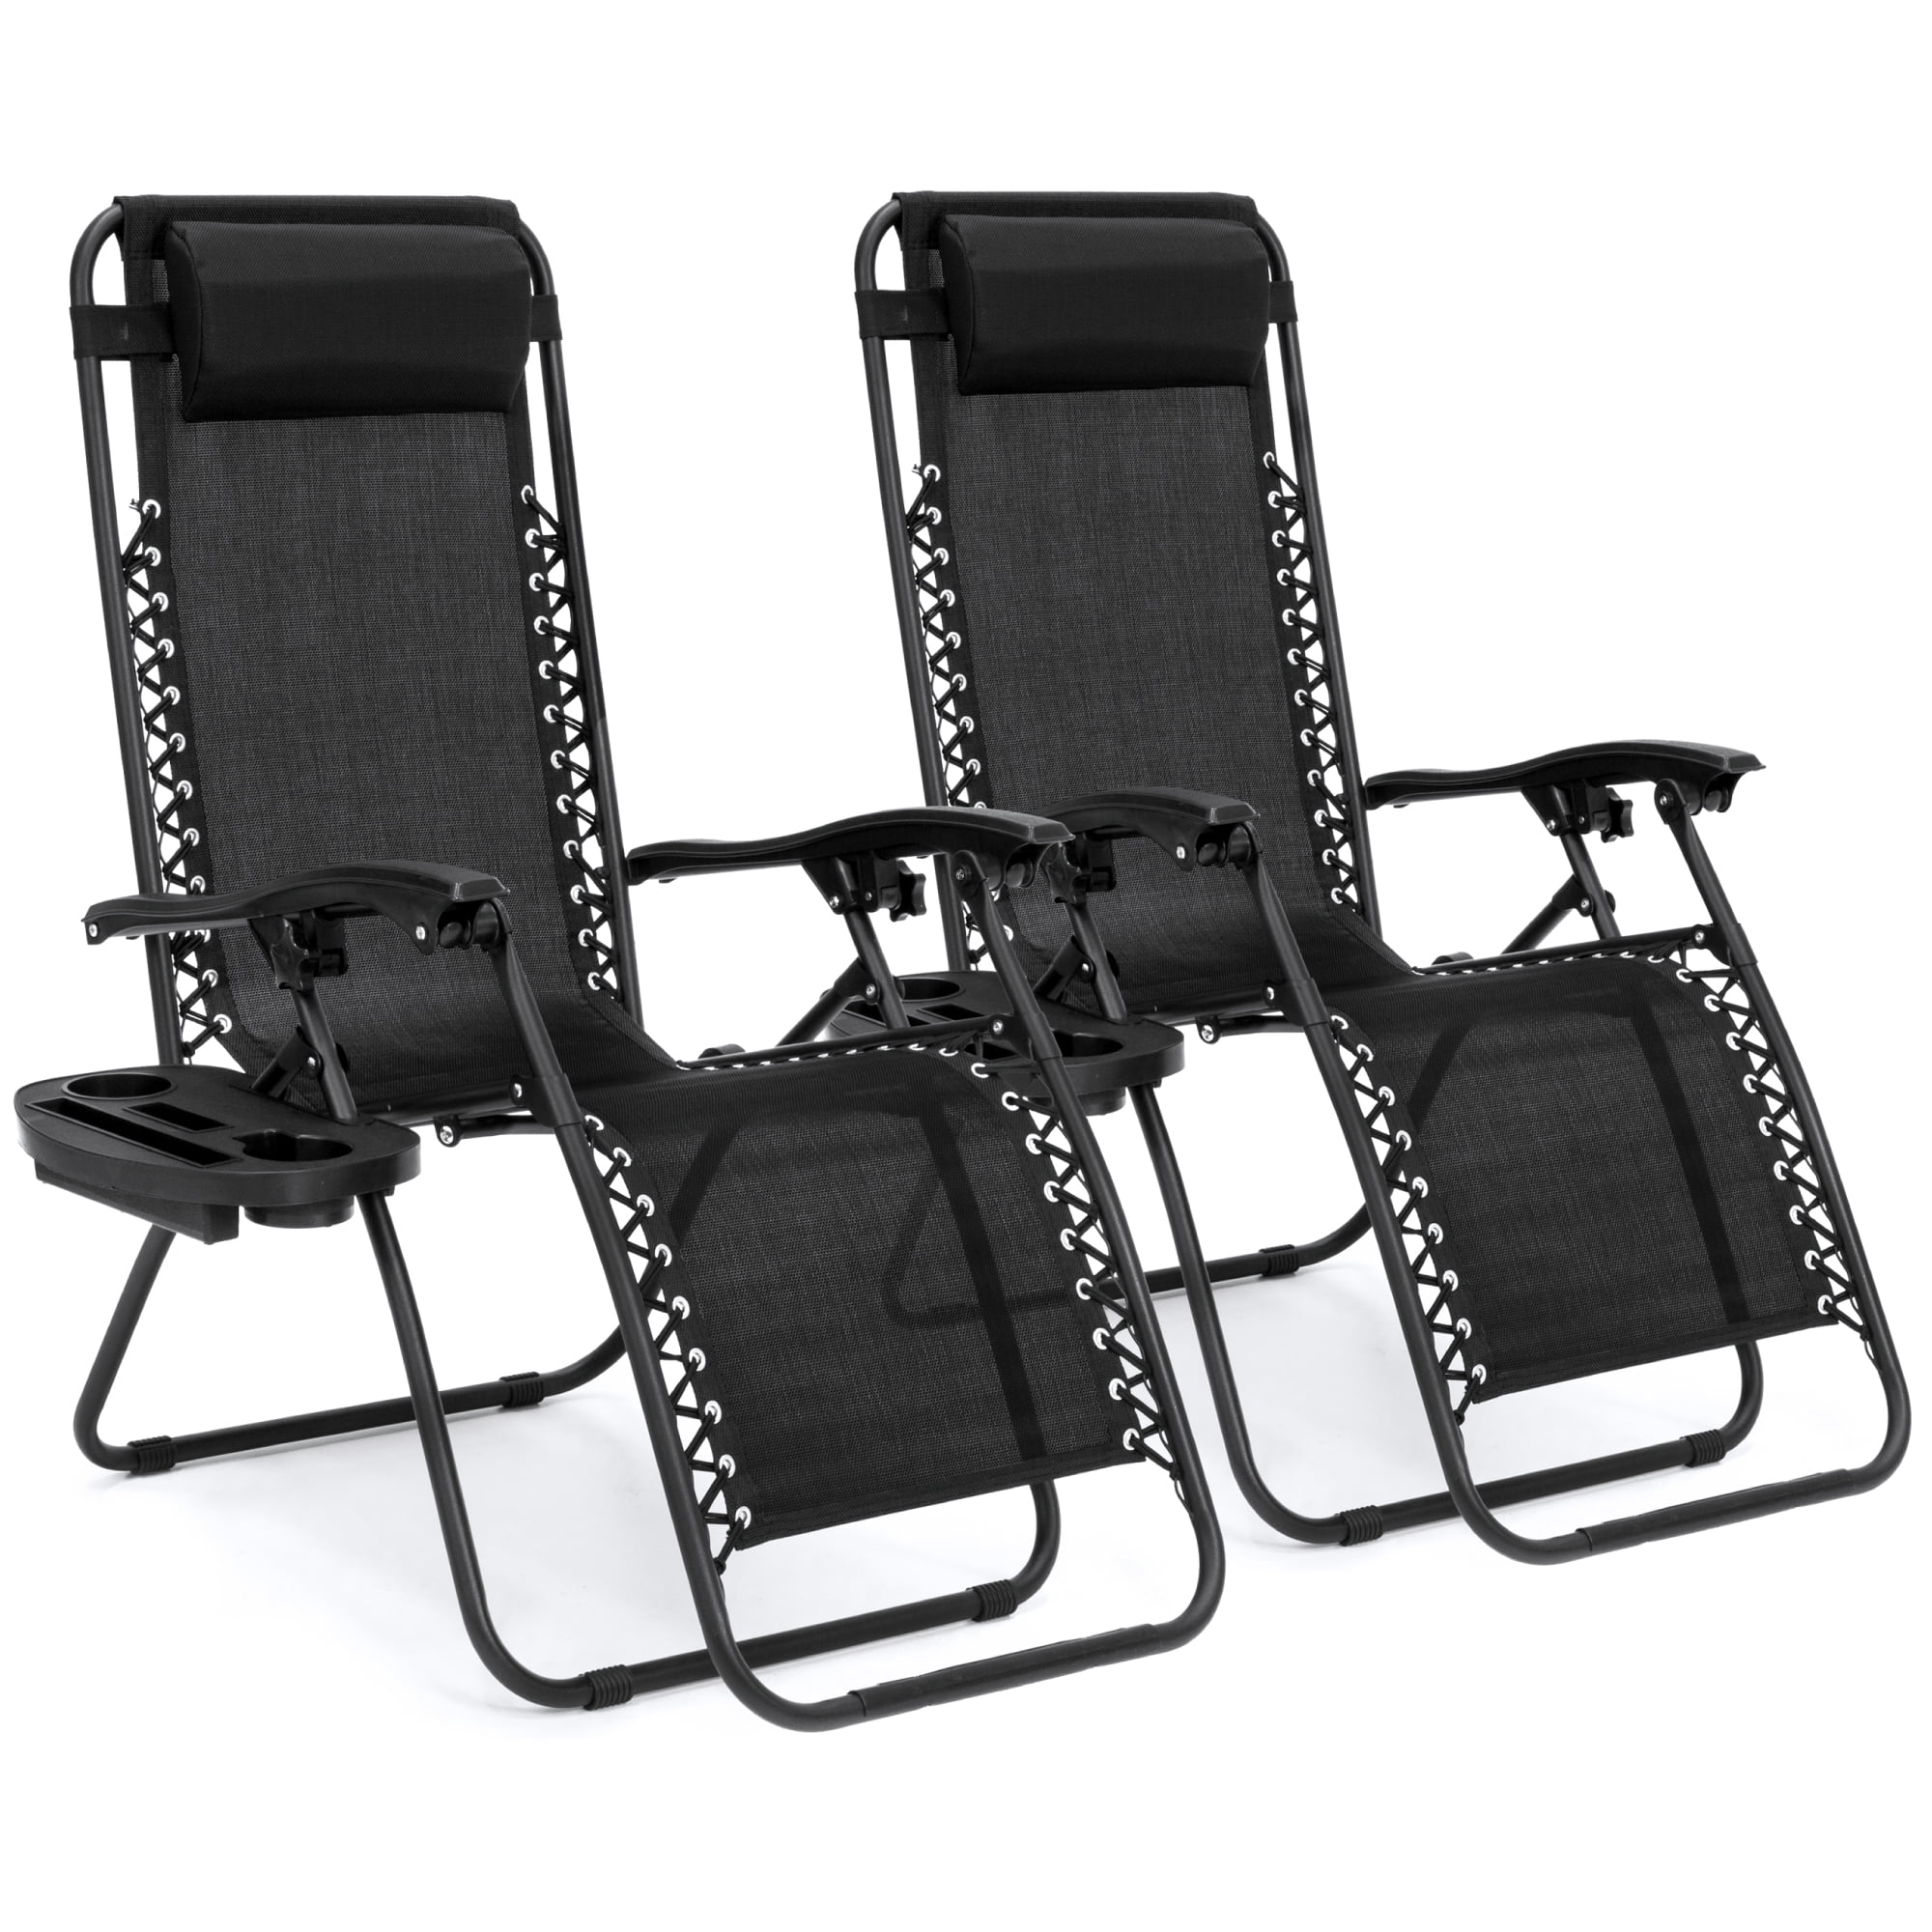 Outdoor Patio Adjustable Zero Gravity Recliner Chair Bed Headrest Pillow Black 